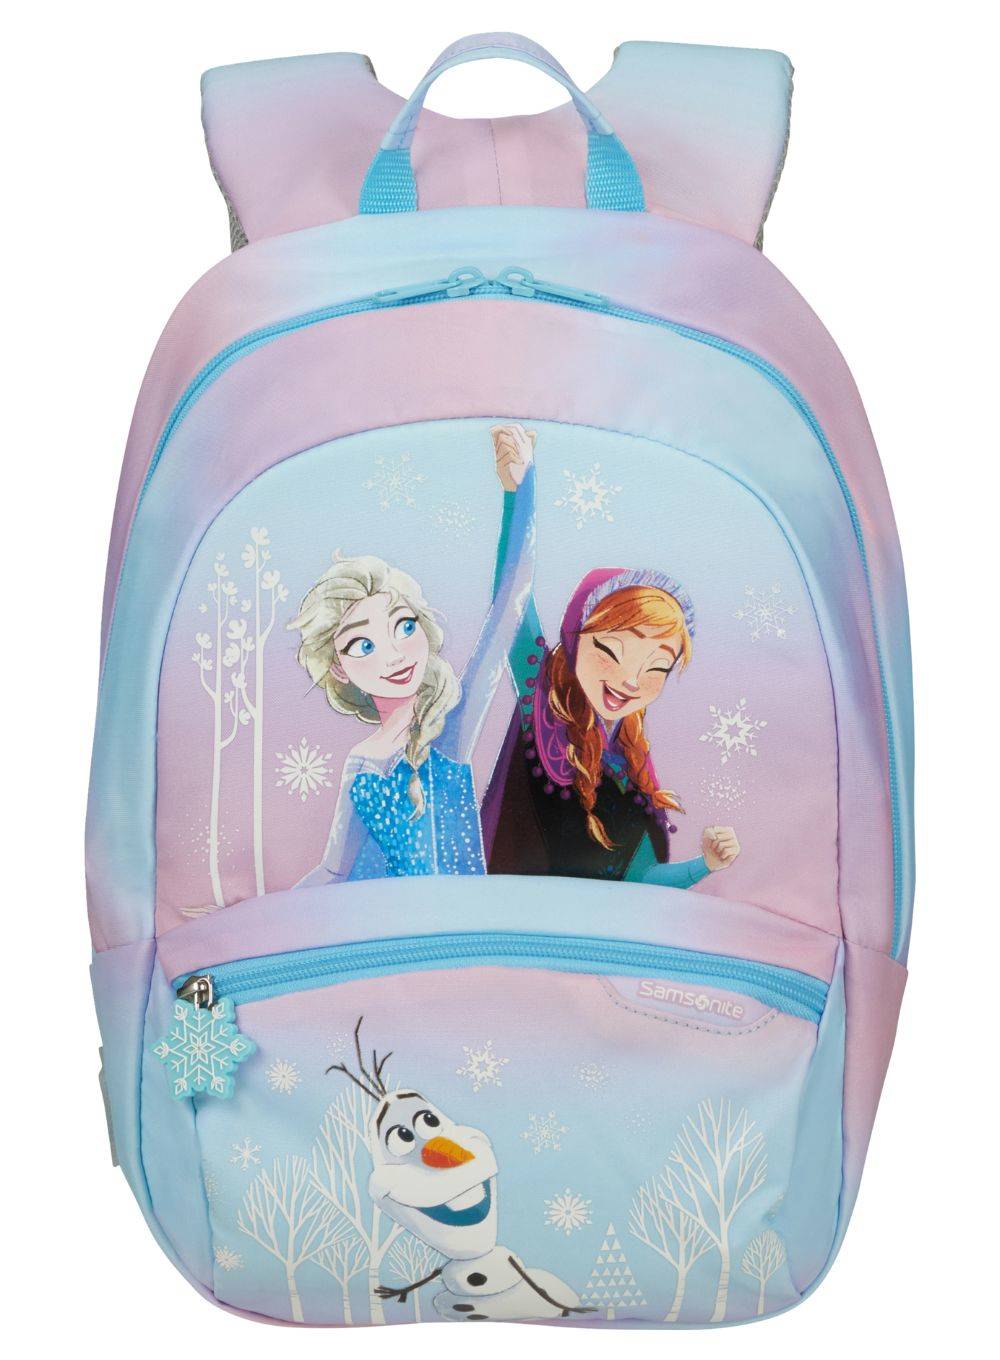 Samsonite Disney Ultimate 2.0 plecak dziecięcy S+, 35 cm, 11 l, wielokolorowy (Frozen), wielokolorowy (Frozen), plecaki dziecięce